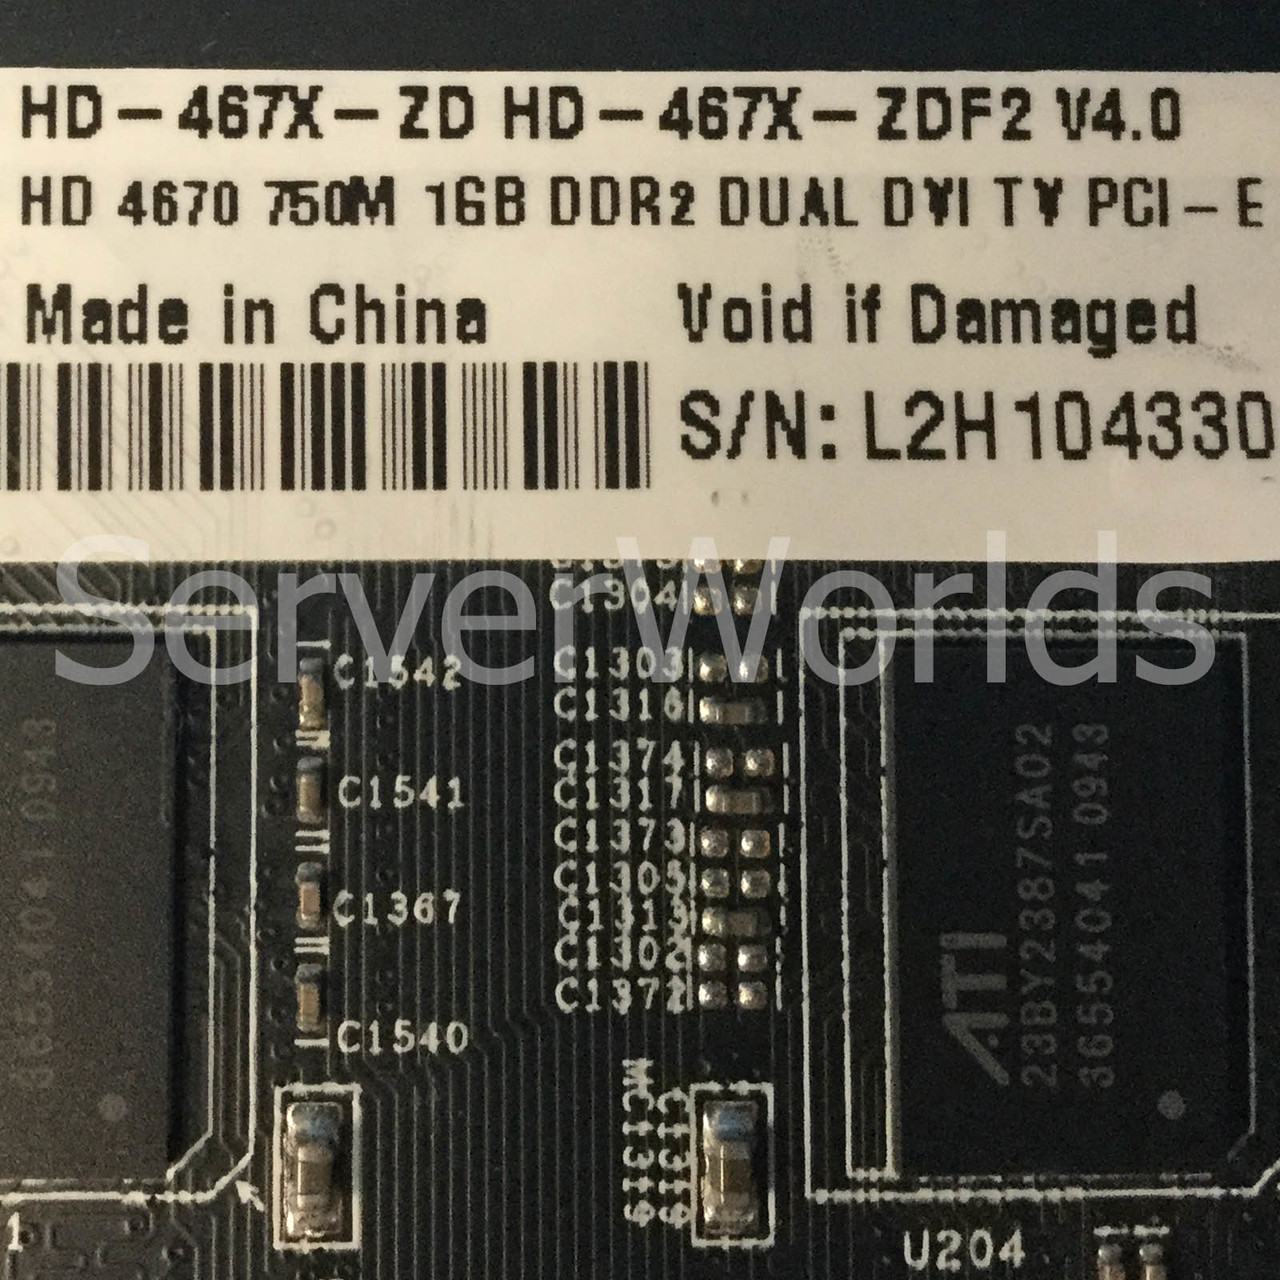 XFX HD-467X-ZDF2 AMD Radeon HD 1GB DDR2 Dual Port DVI Video Card